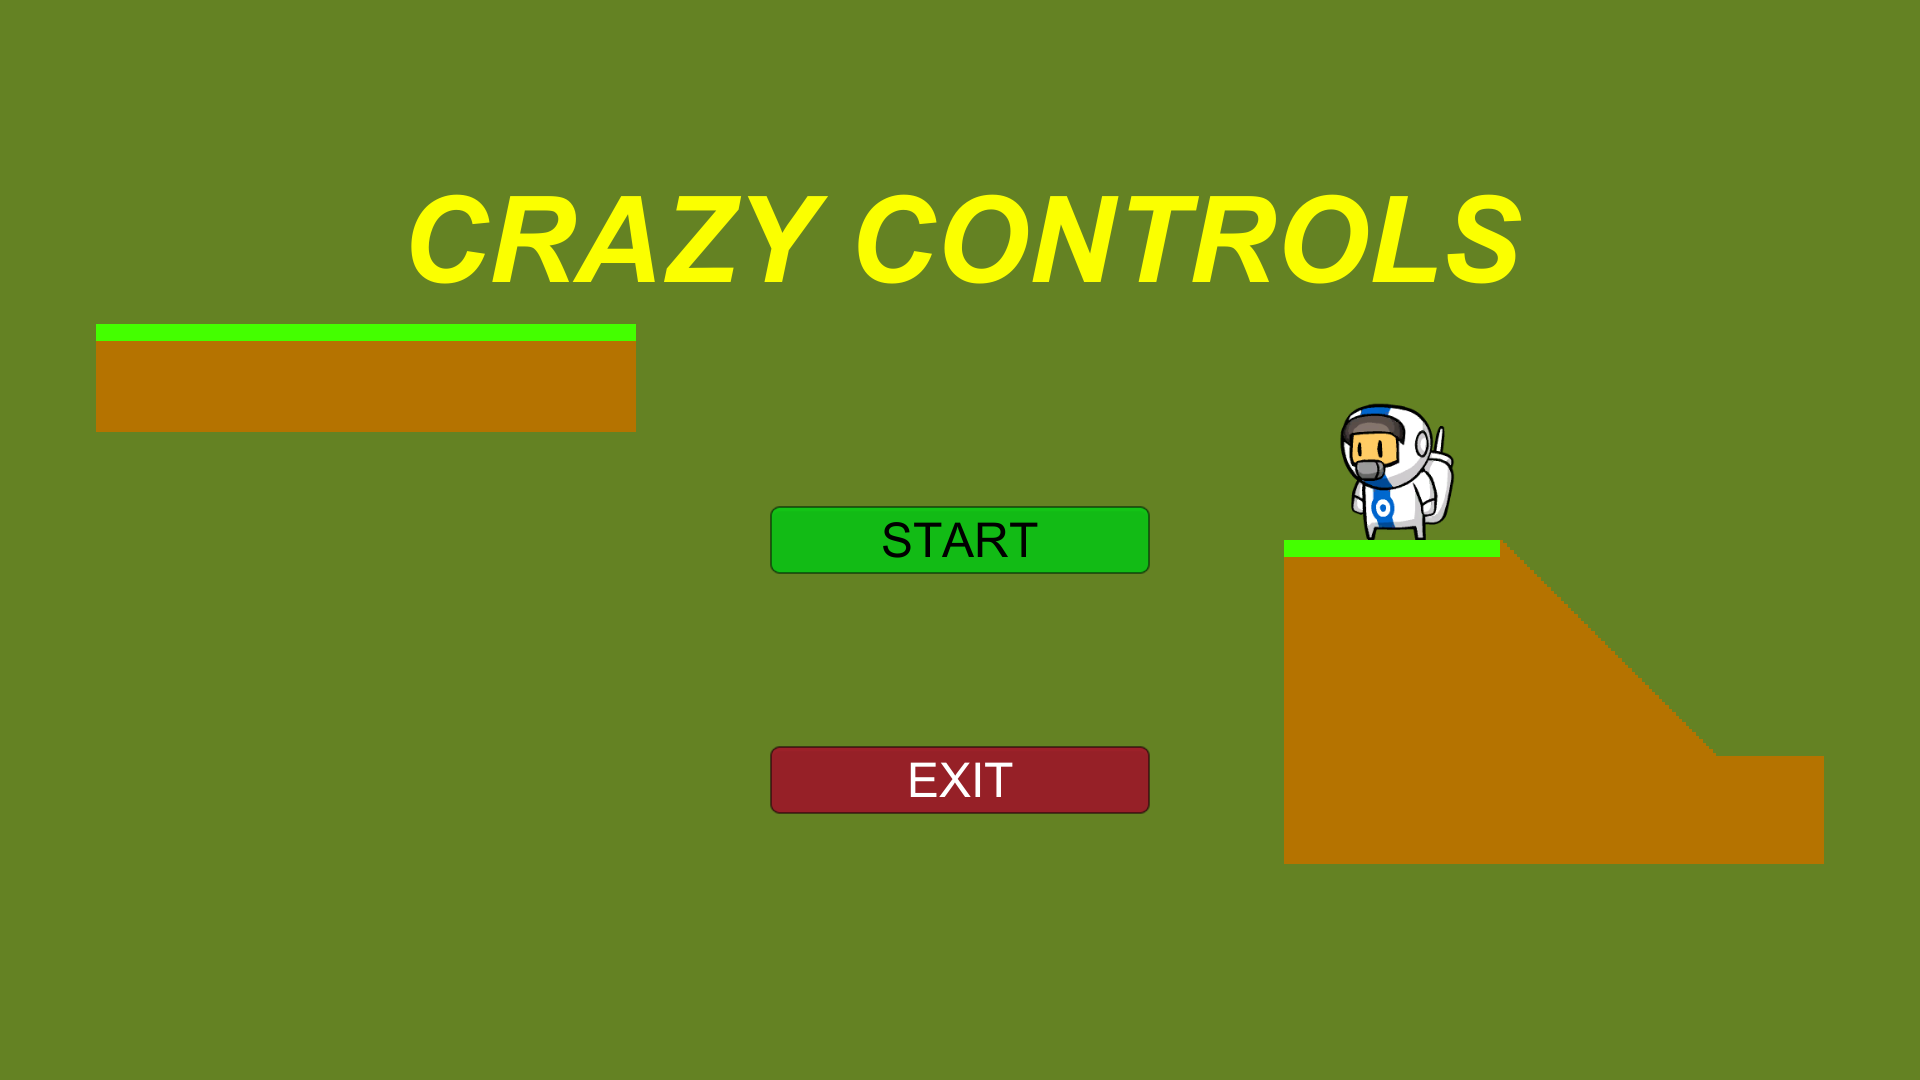 CRAZY CONTROLS